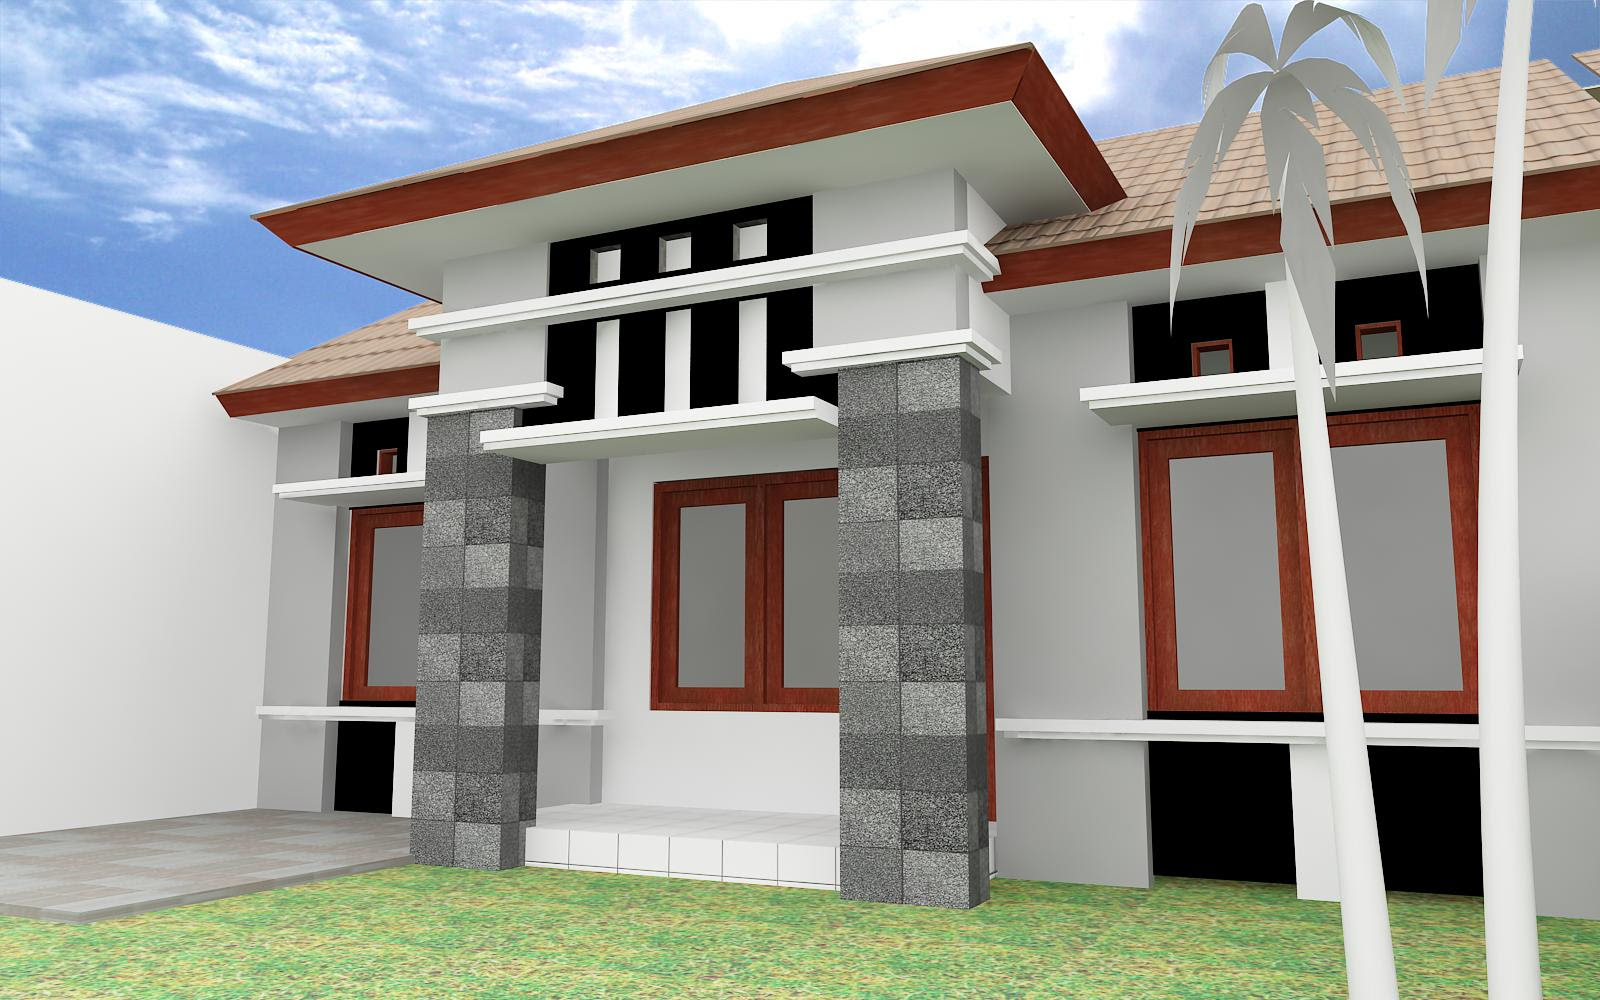 Download Model Teras Rumah Minimalis Atap Dak Beton | Desainrumah72